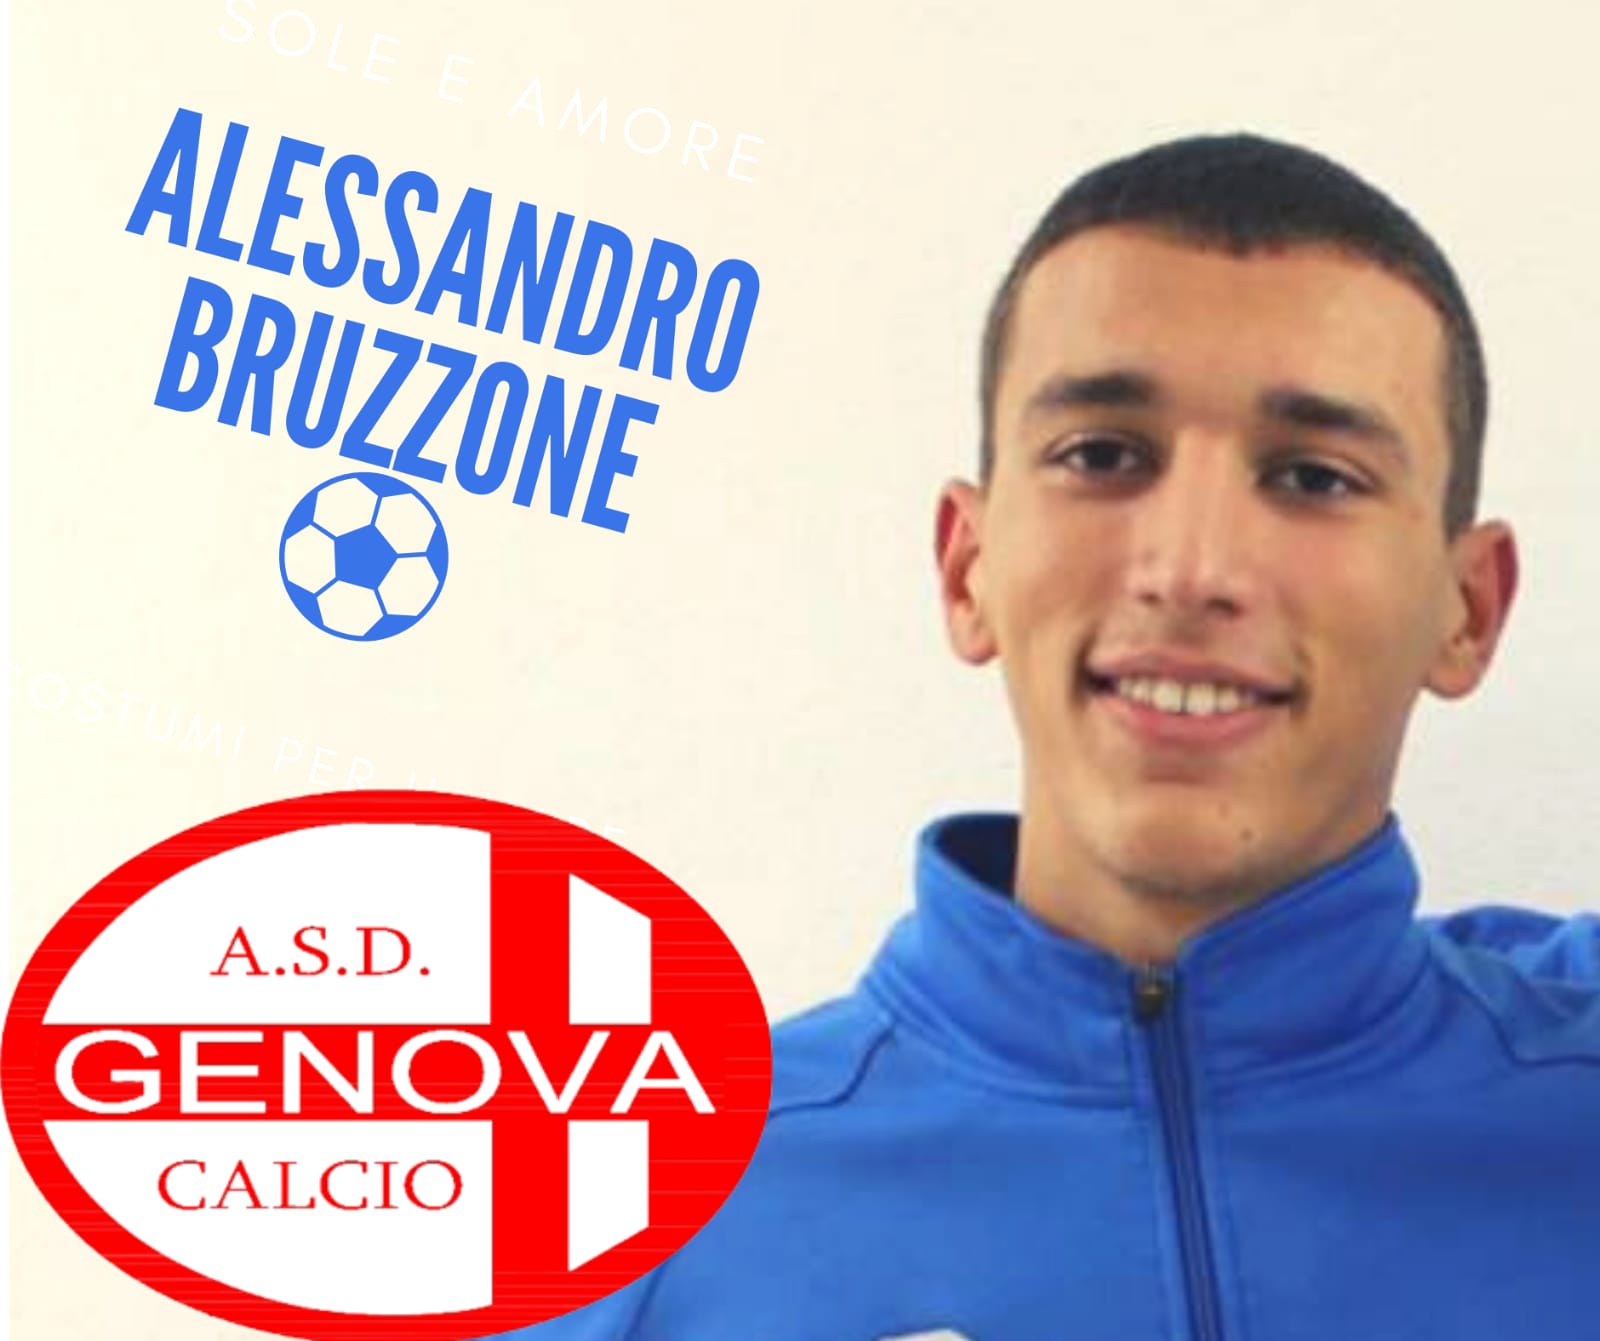 Genova Calcio, rinforzo a centrocampo: arriva Bruzzone